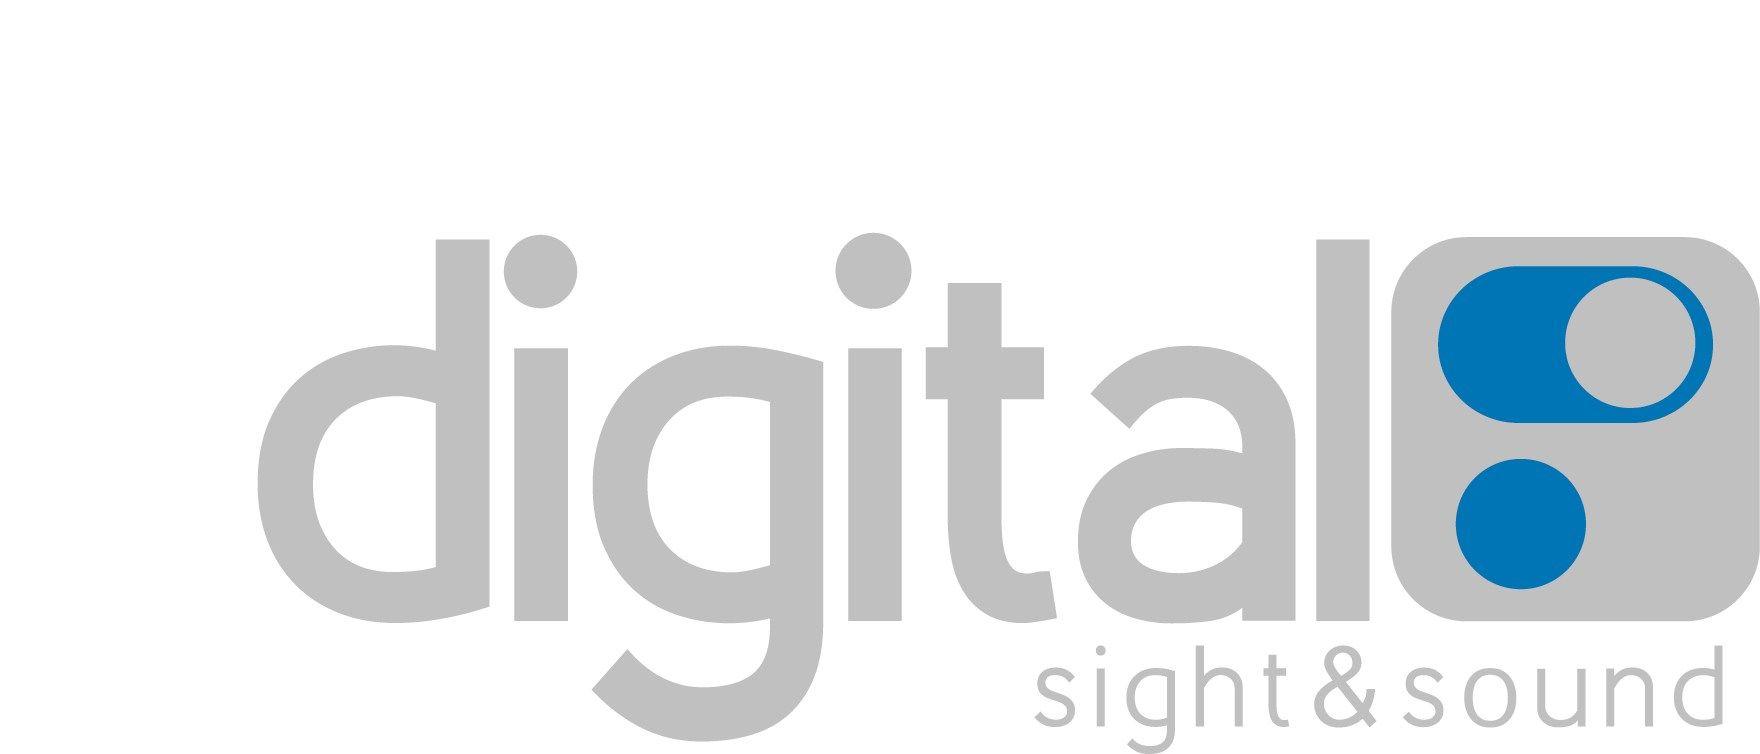 DSS Logo - DSS LOGO FINAL 1 jpg - Digital Sight & Sound